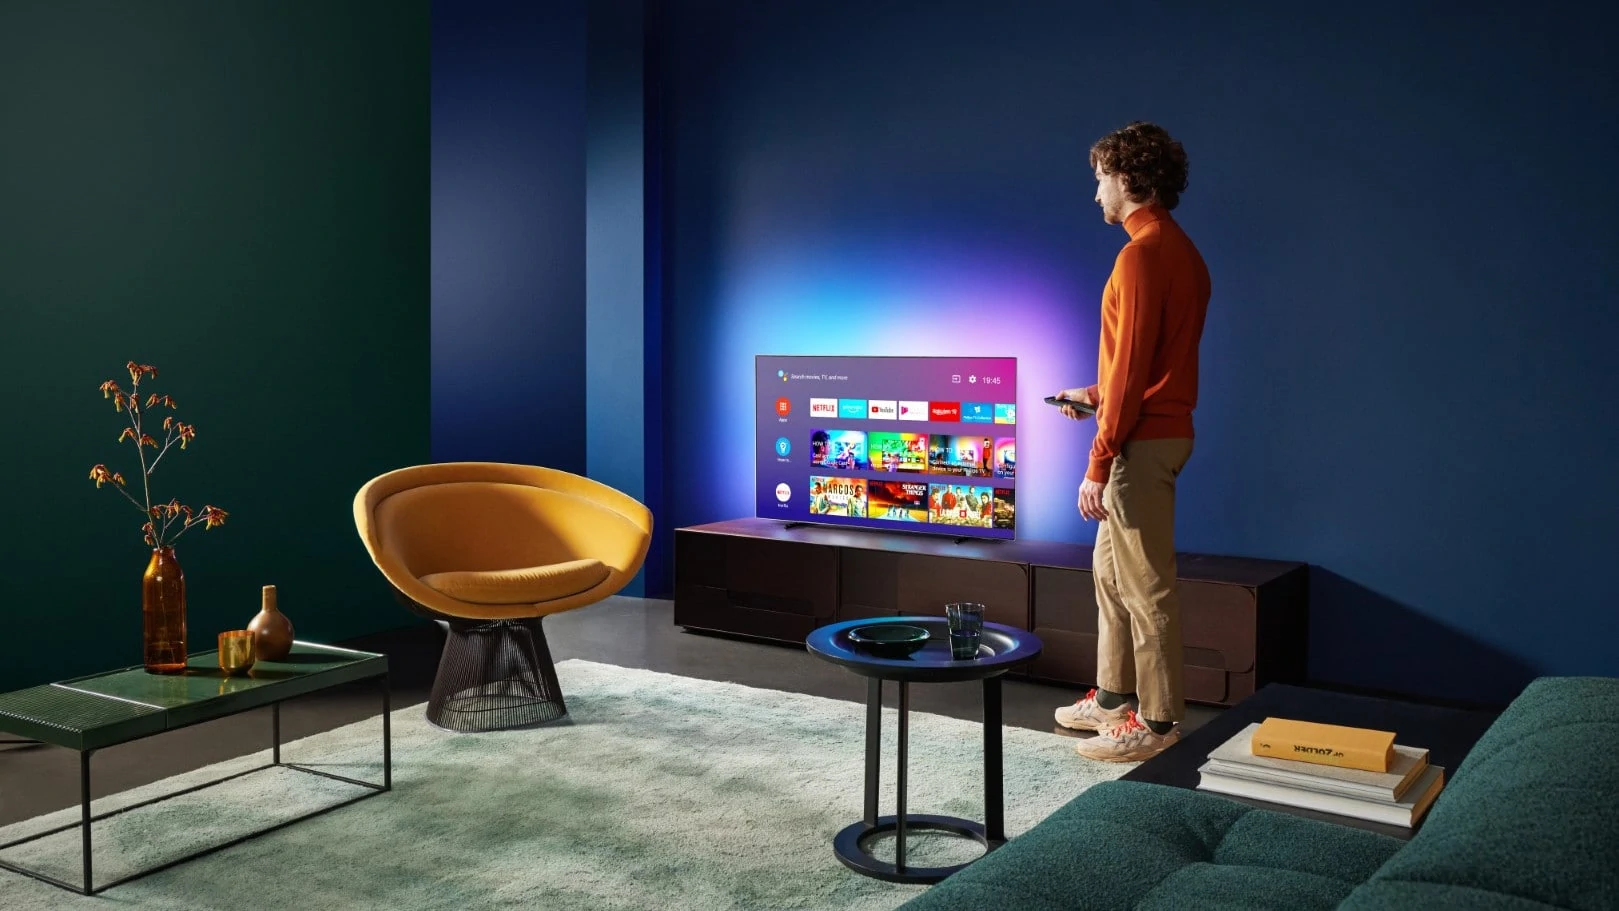 android tv in kleurrijke woonkamer met persoon ernaast